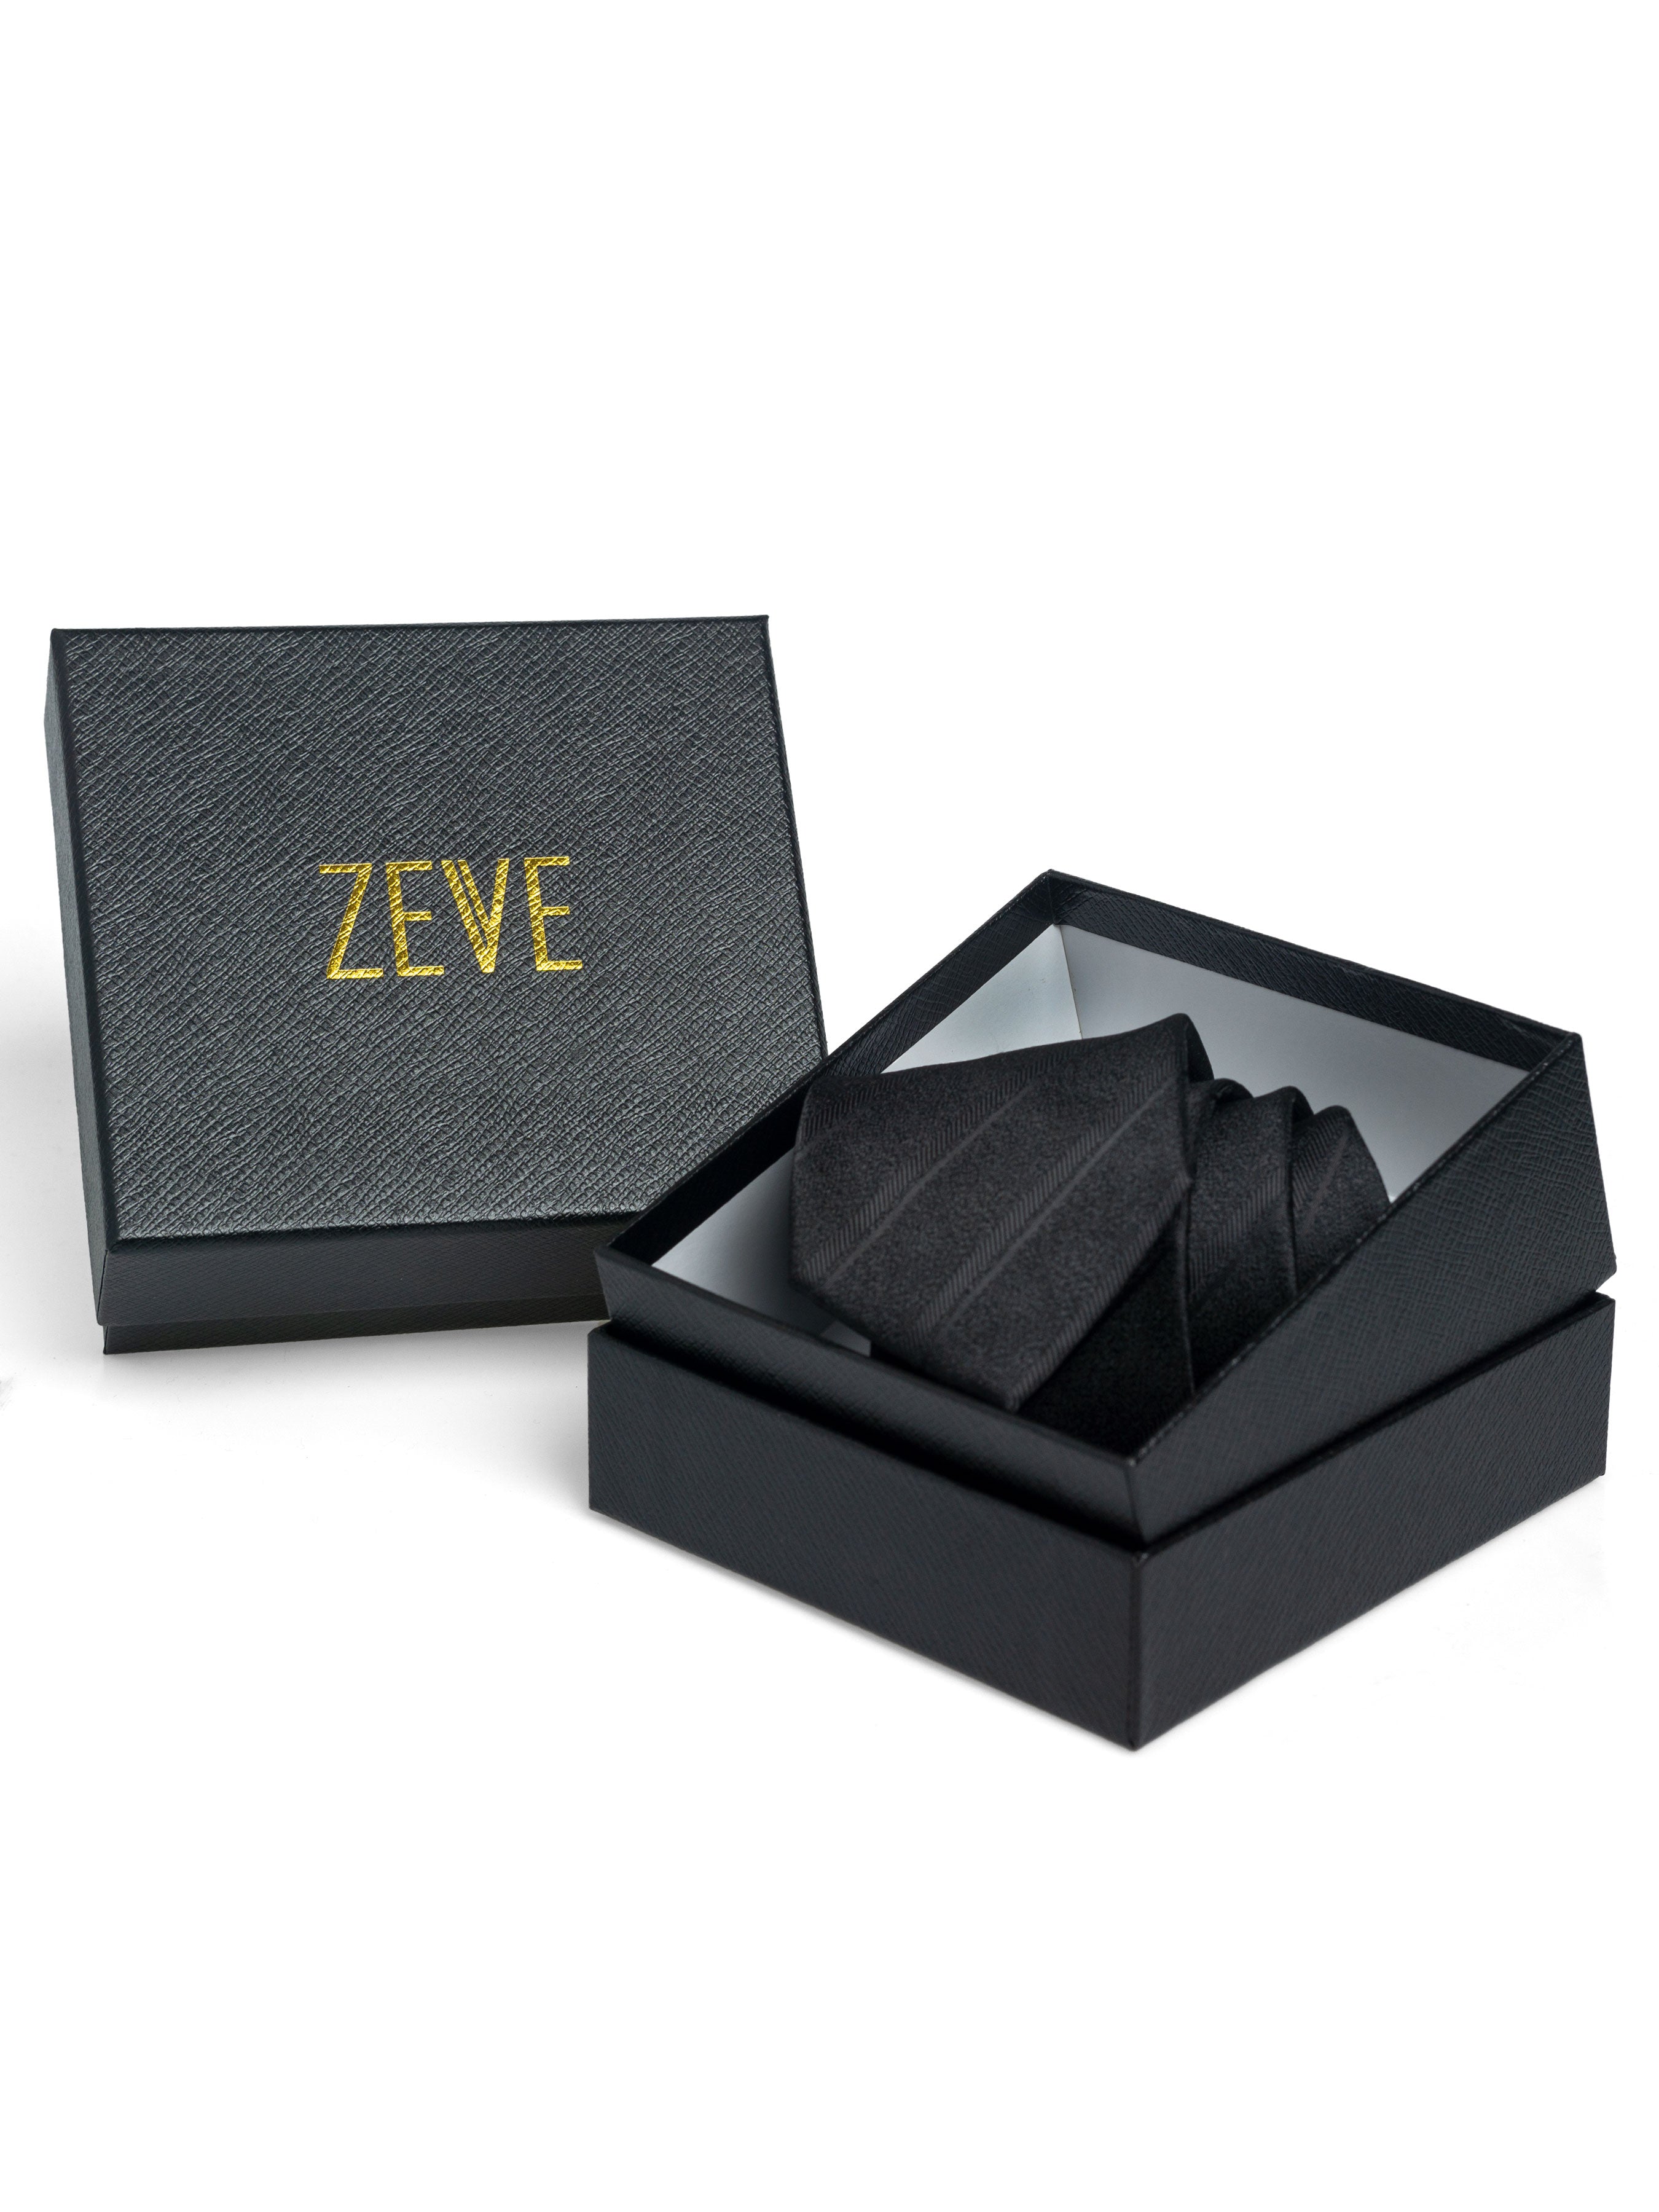 Double Stripe Tie - Black - Zeve Shoes